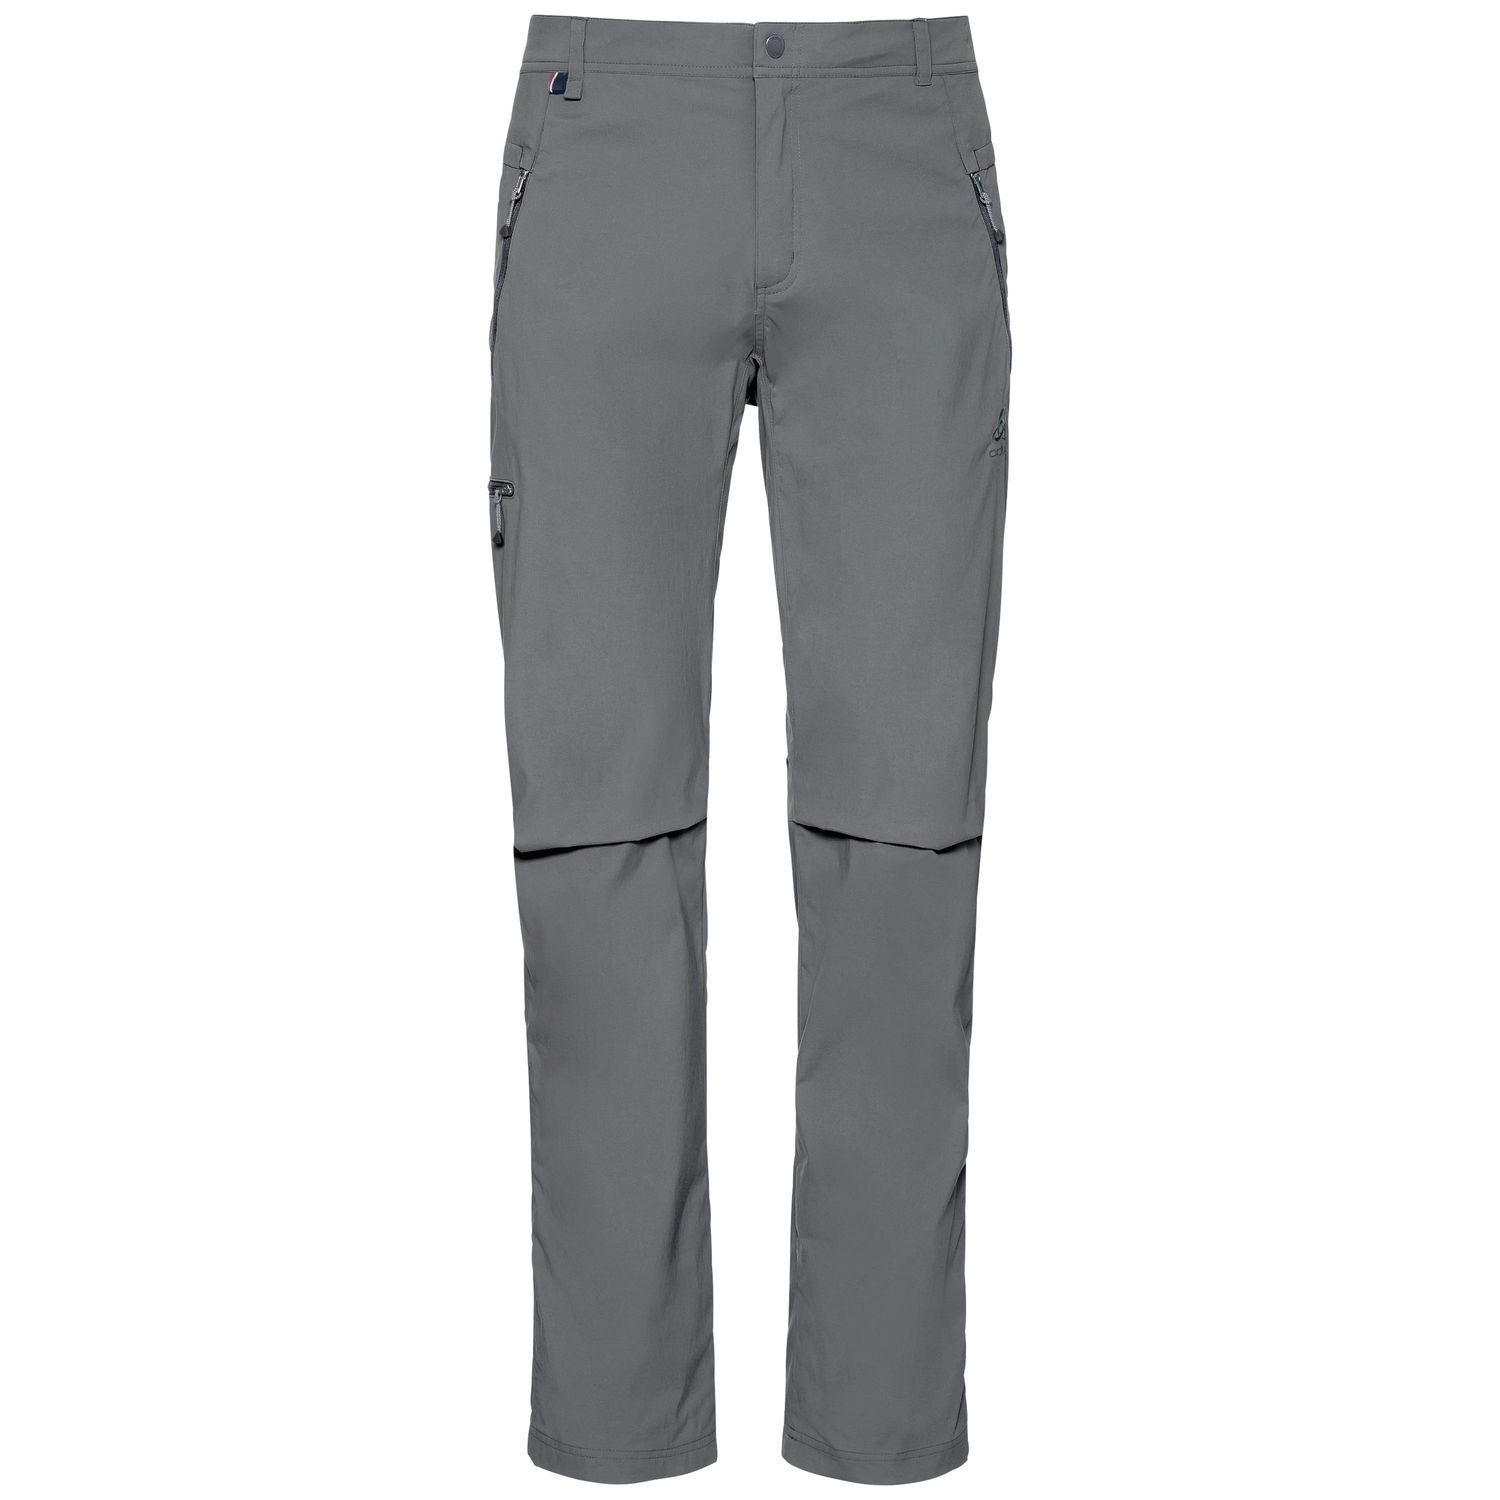 Odlo Wedgemount - Walking trousers - Men's